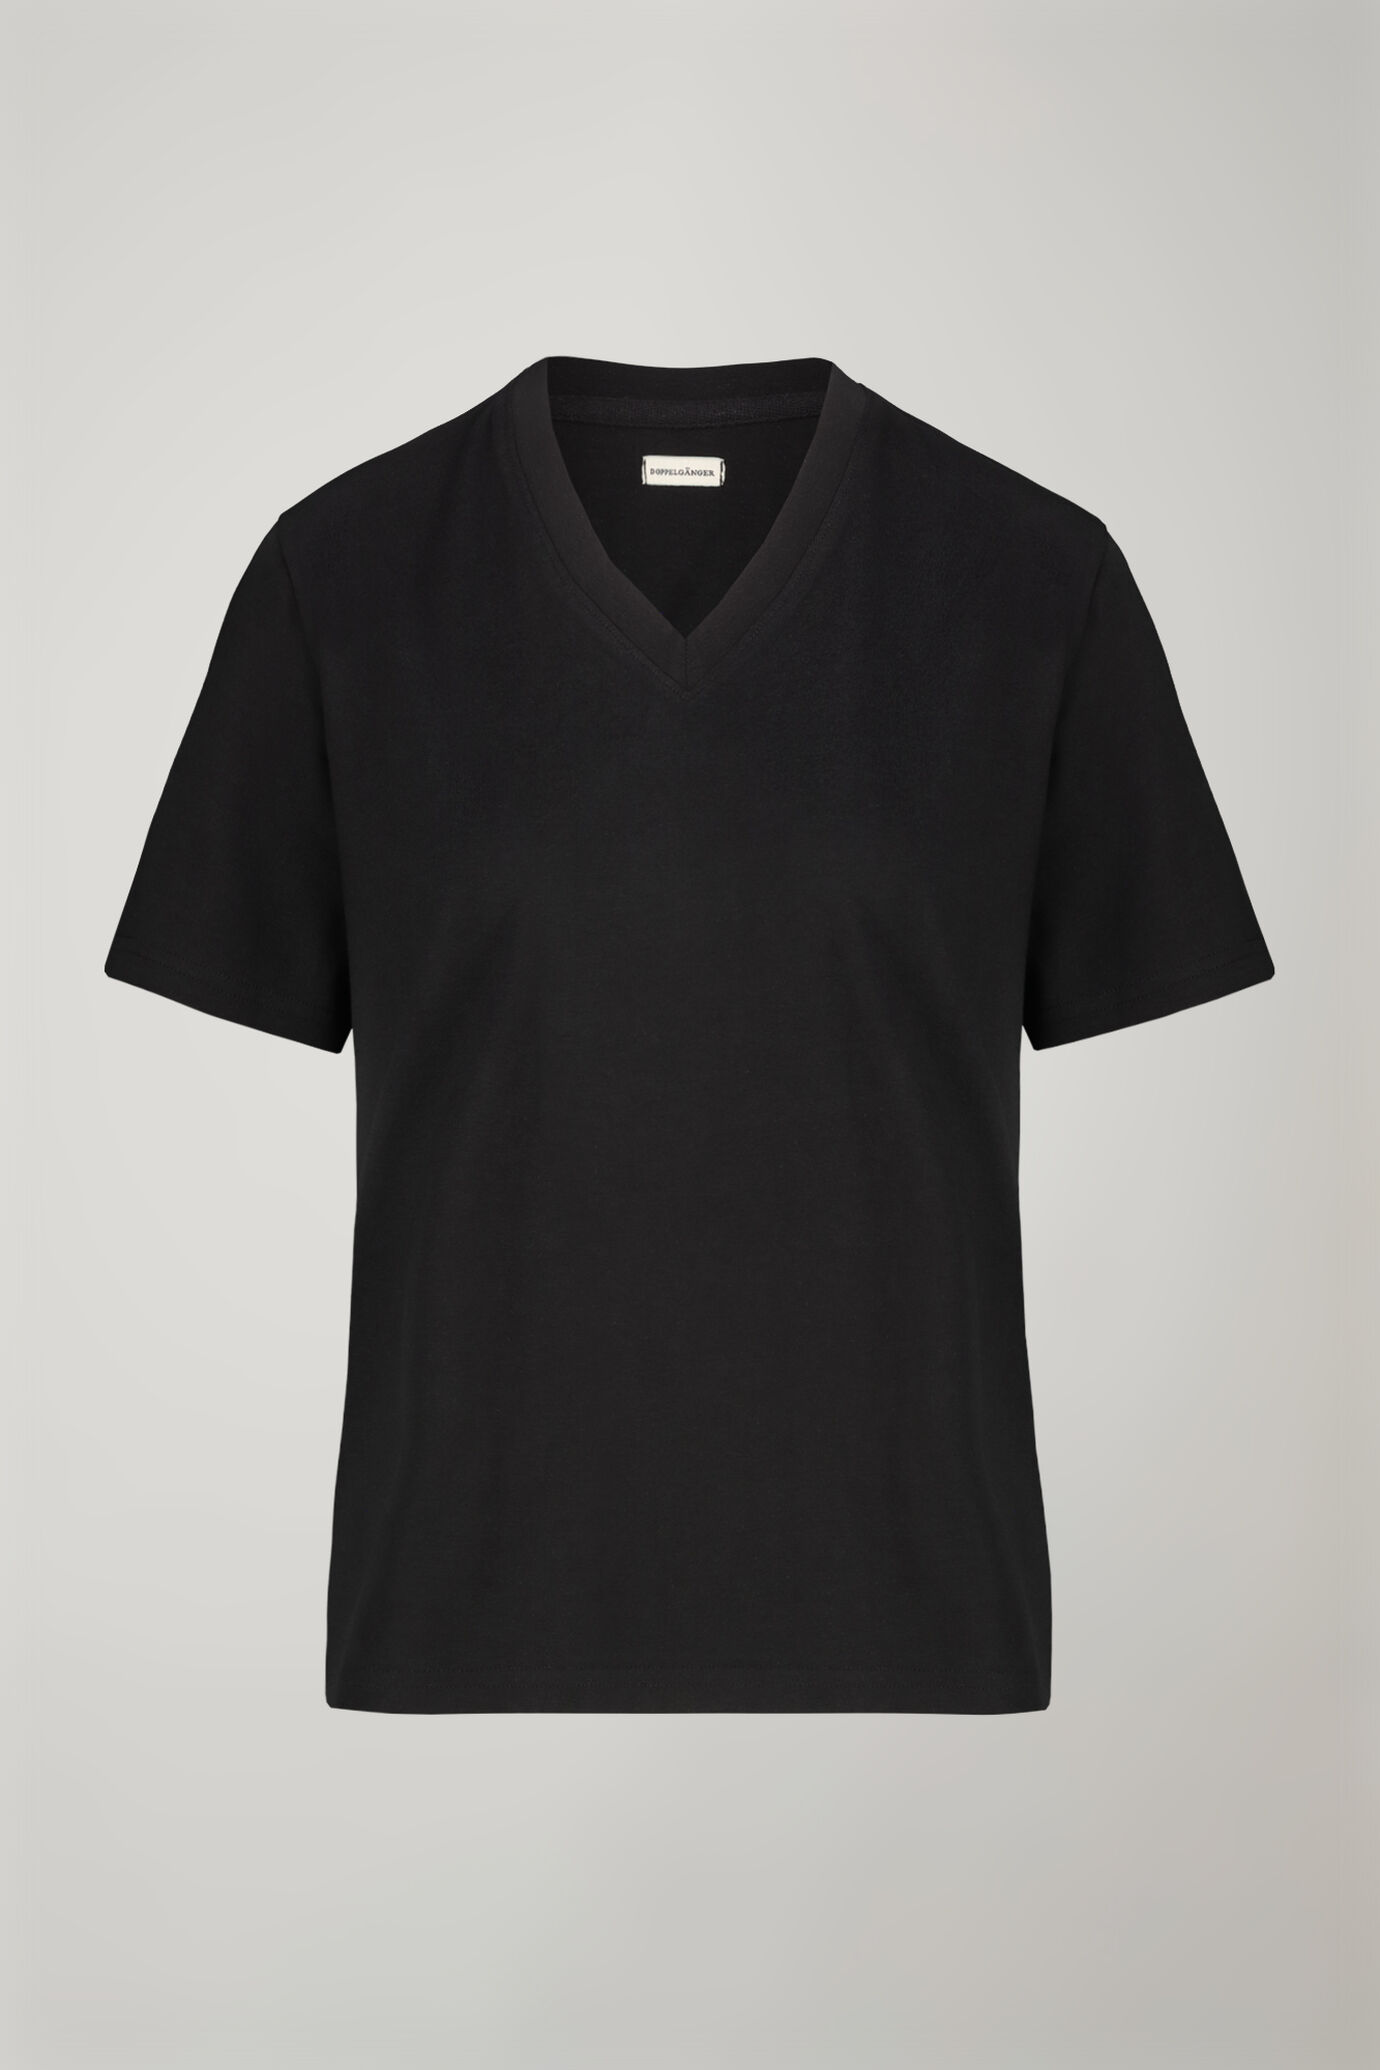 Women’s v-neck t-shirt 100% cotton regular fit image number 4